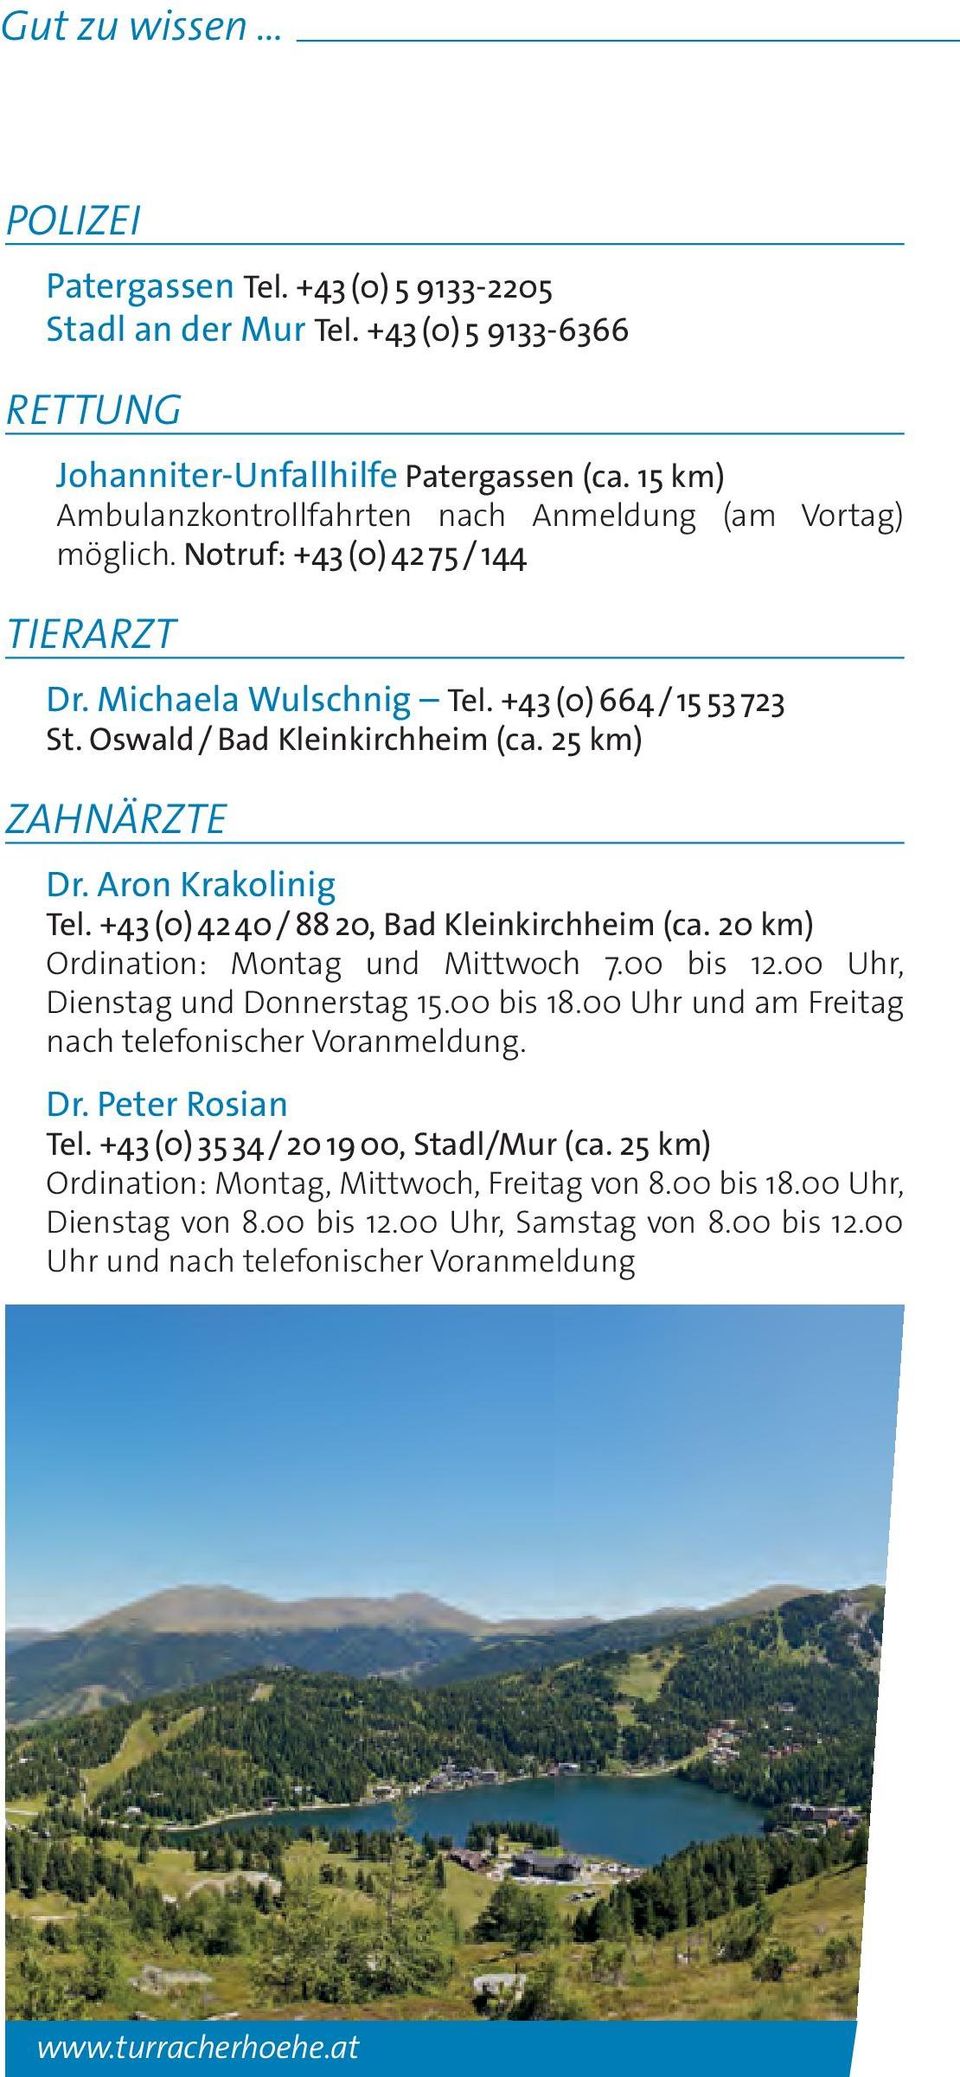 25 km) ZAHNÄRZTE Dr. Aron Krakolinig Tel. +43 (0) 42 40 / 88 20, Bad Kleinkirchheim (ca. 20 km) Ordination: Montag und Mittwoch 7.00 bis 12.00 Uhr, Dienstag und Donnerstag 15.00 bis 18.